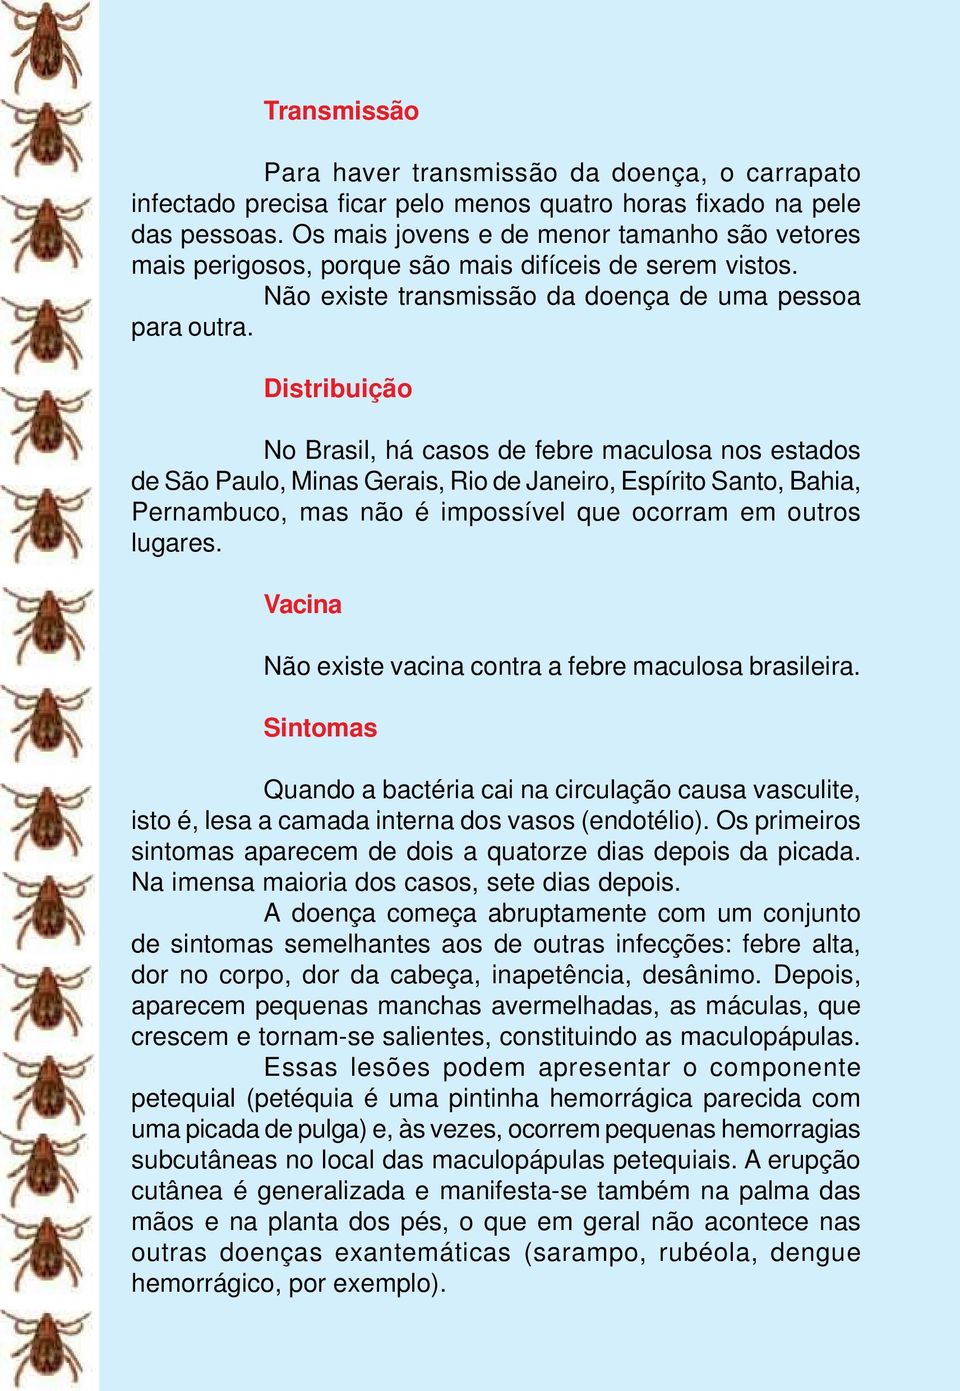 Distribuição No Brasil, há casos de febre maculosa nos estados de São Paulo, Minas Gerais, Rio de Janeiro, Espírito Santo, Bahia, Pernambuco, mas não é impossível que ocorram em outros lugares.